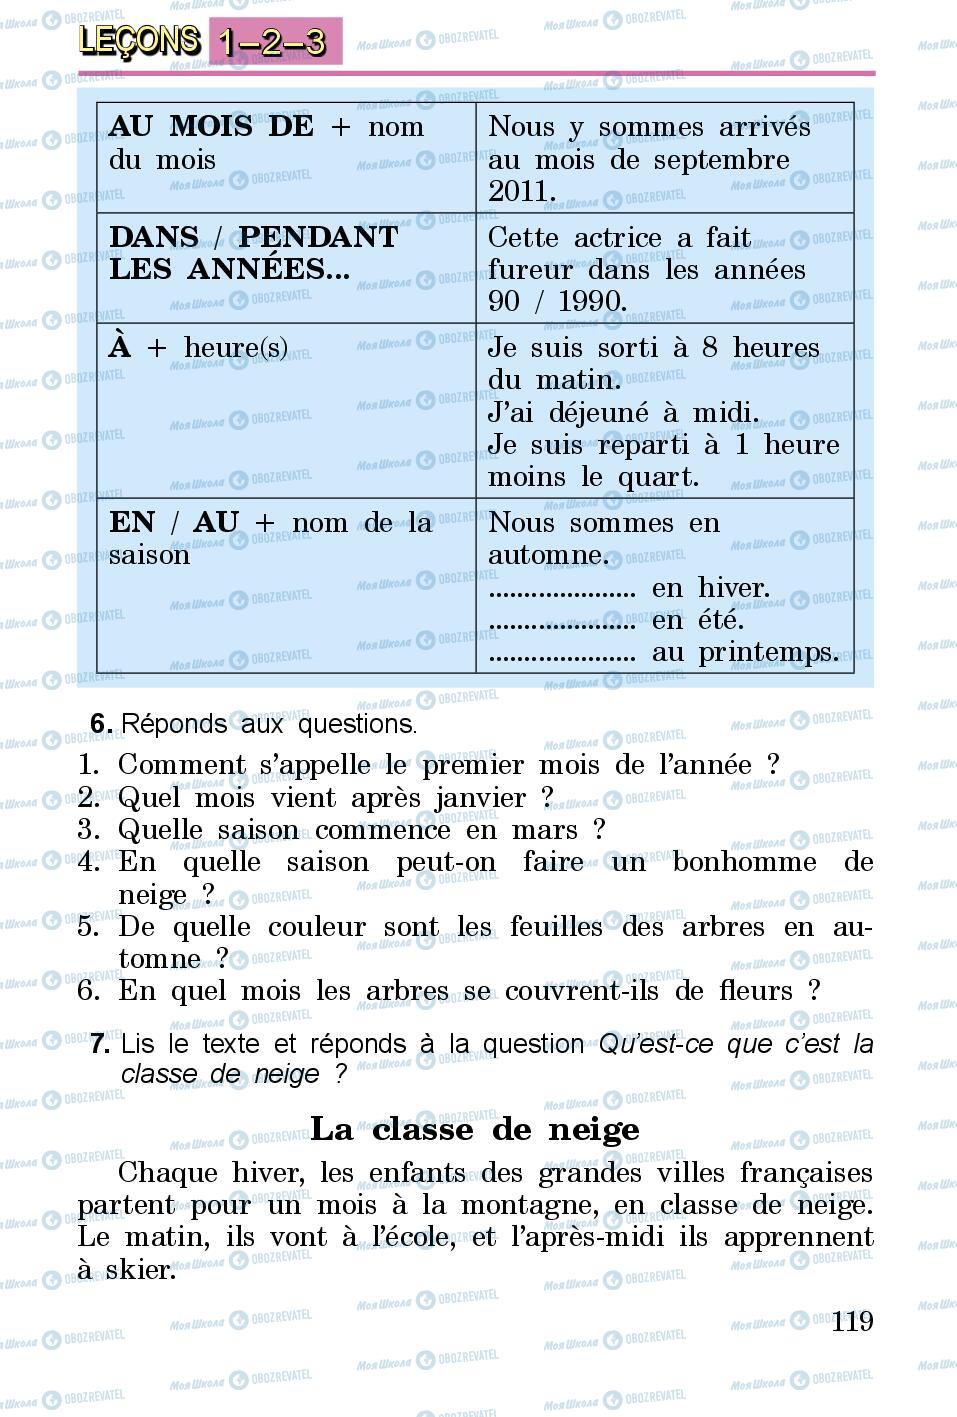 Підручники Французька мова 3 клас сторінка 119